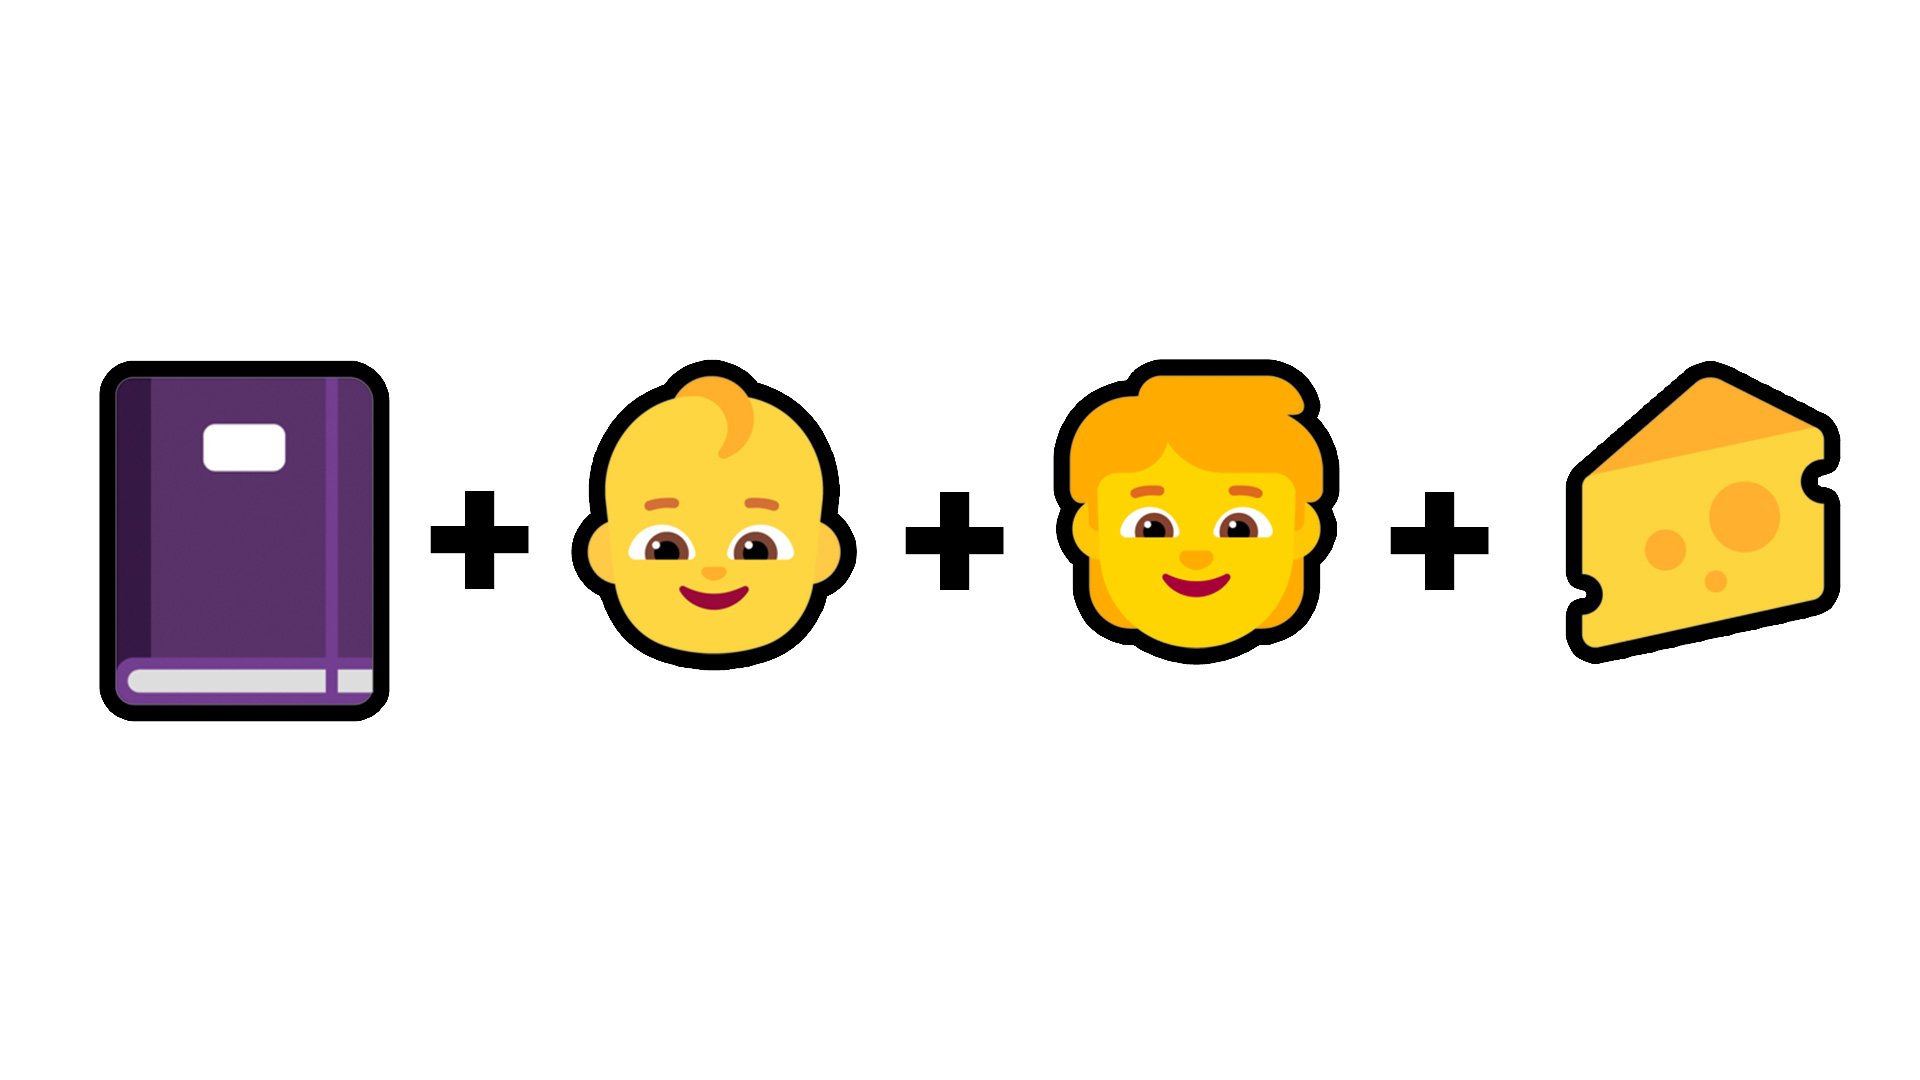 Emoji quiz